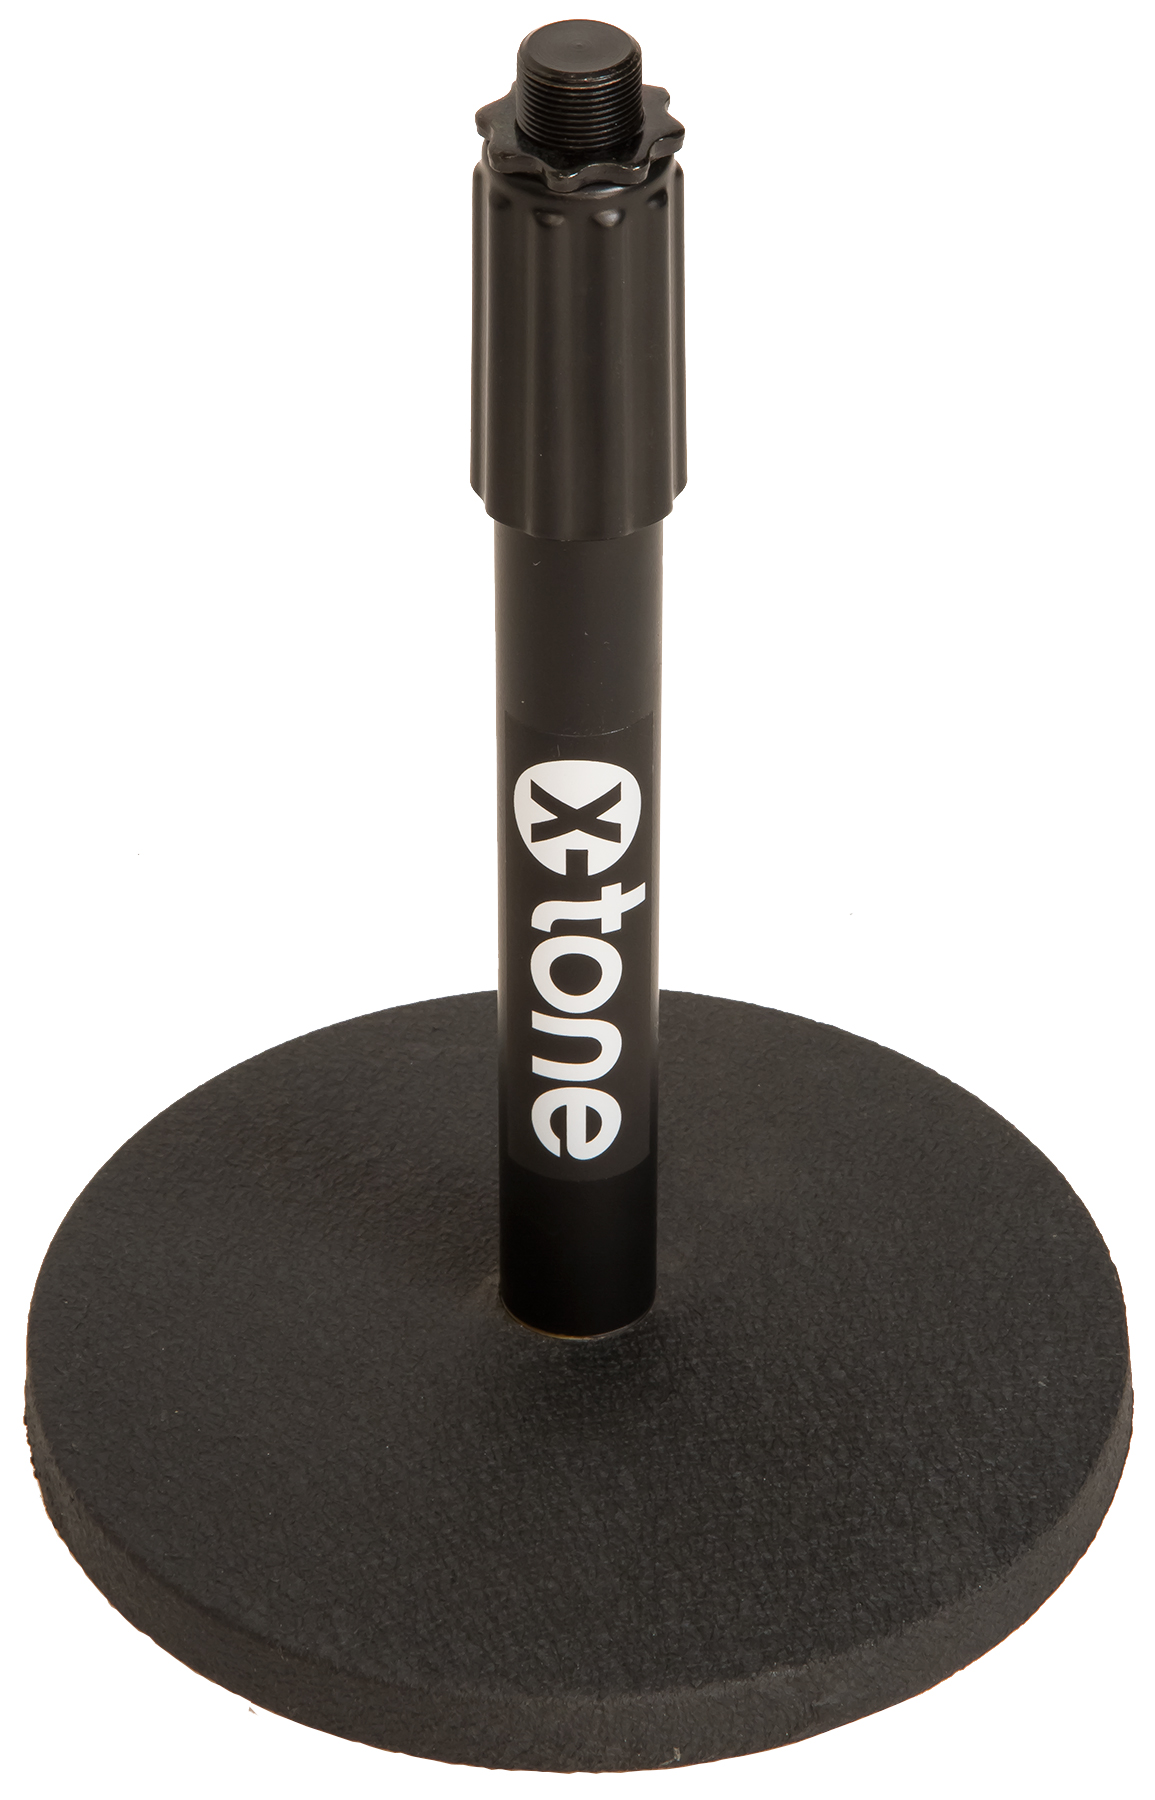 X-tone Xh 6010 Pied Micro De Table - Soporte de micrófono - Variation 1